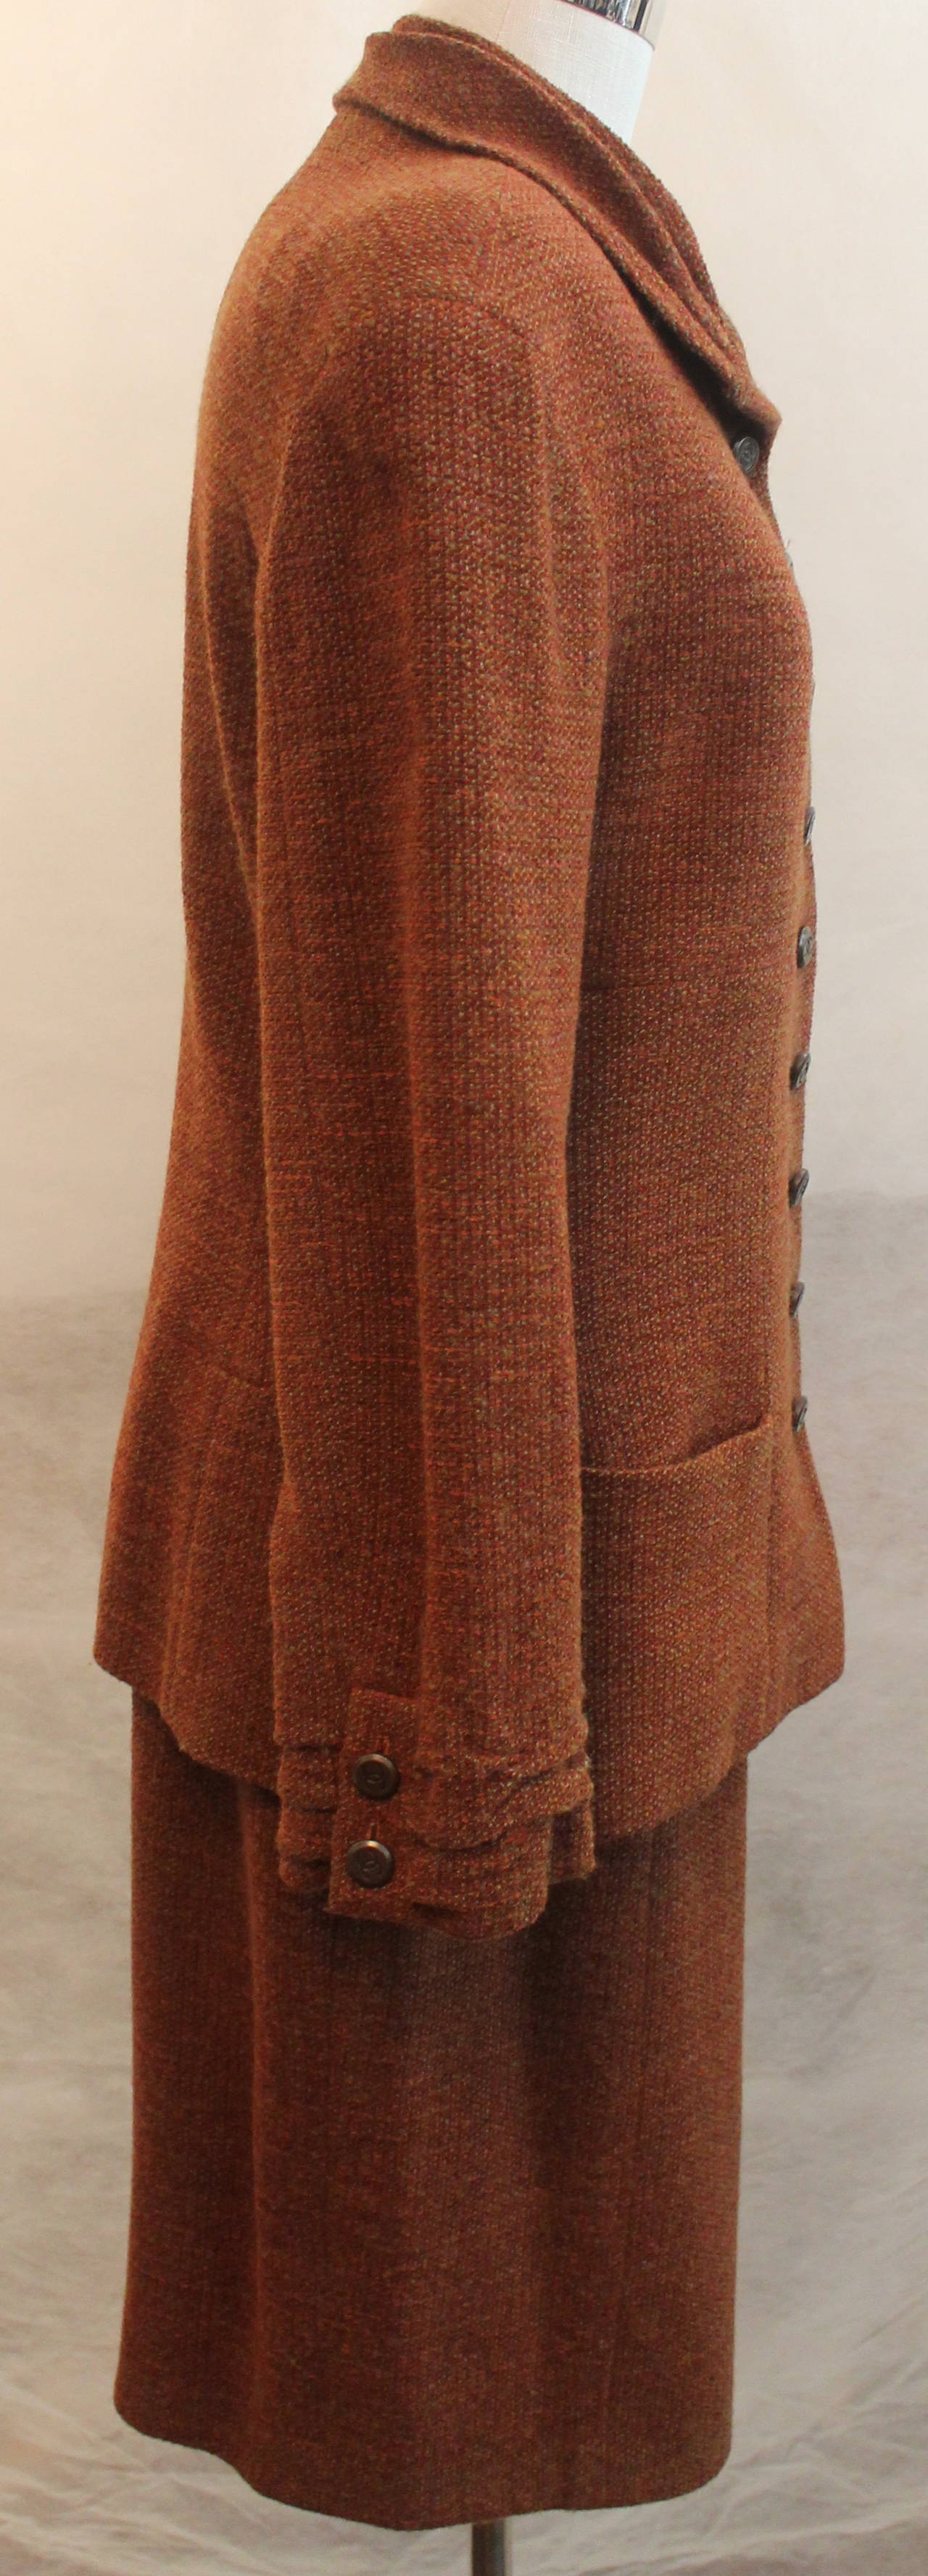 Chanel Costume jupe en laine mélangée rouille - 42 - Circa 1998  
Rouflaquettes aux poignets et au col, 2 poches de fond. 
Mesures :
Veste : tour de poitrine 38  De l'épaule à l'épaule 17,5  Taille 36  Longueur de la manche : 24